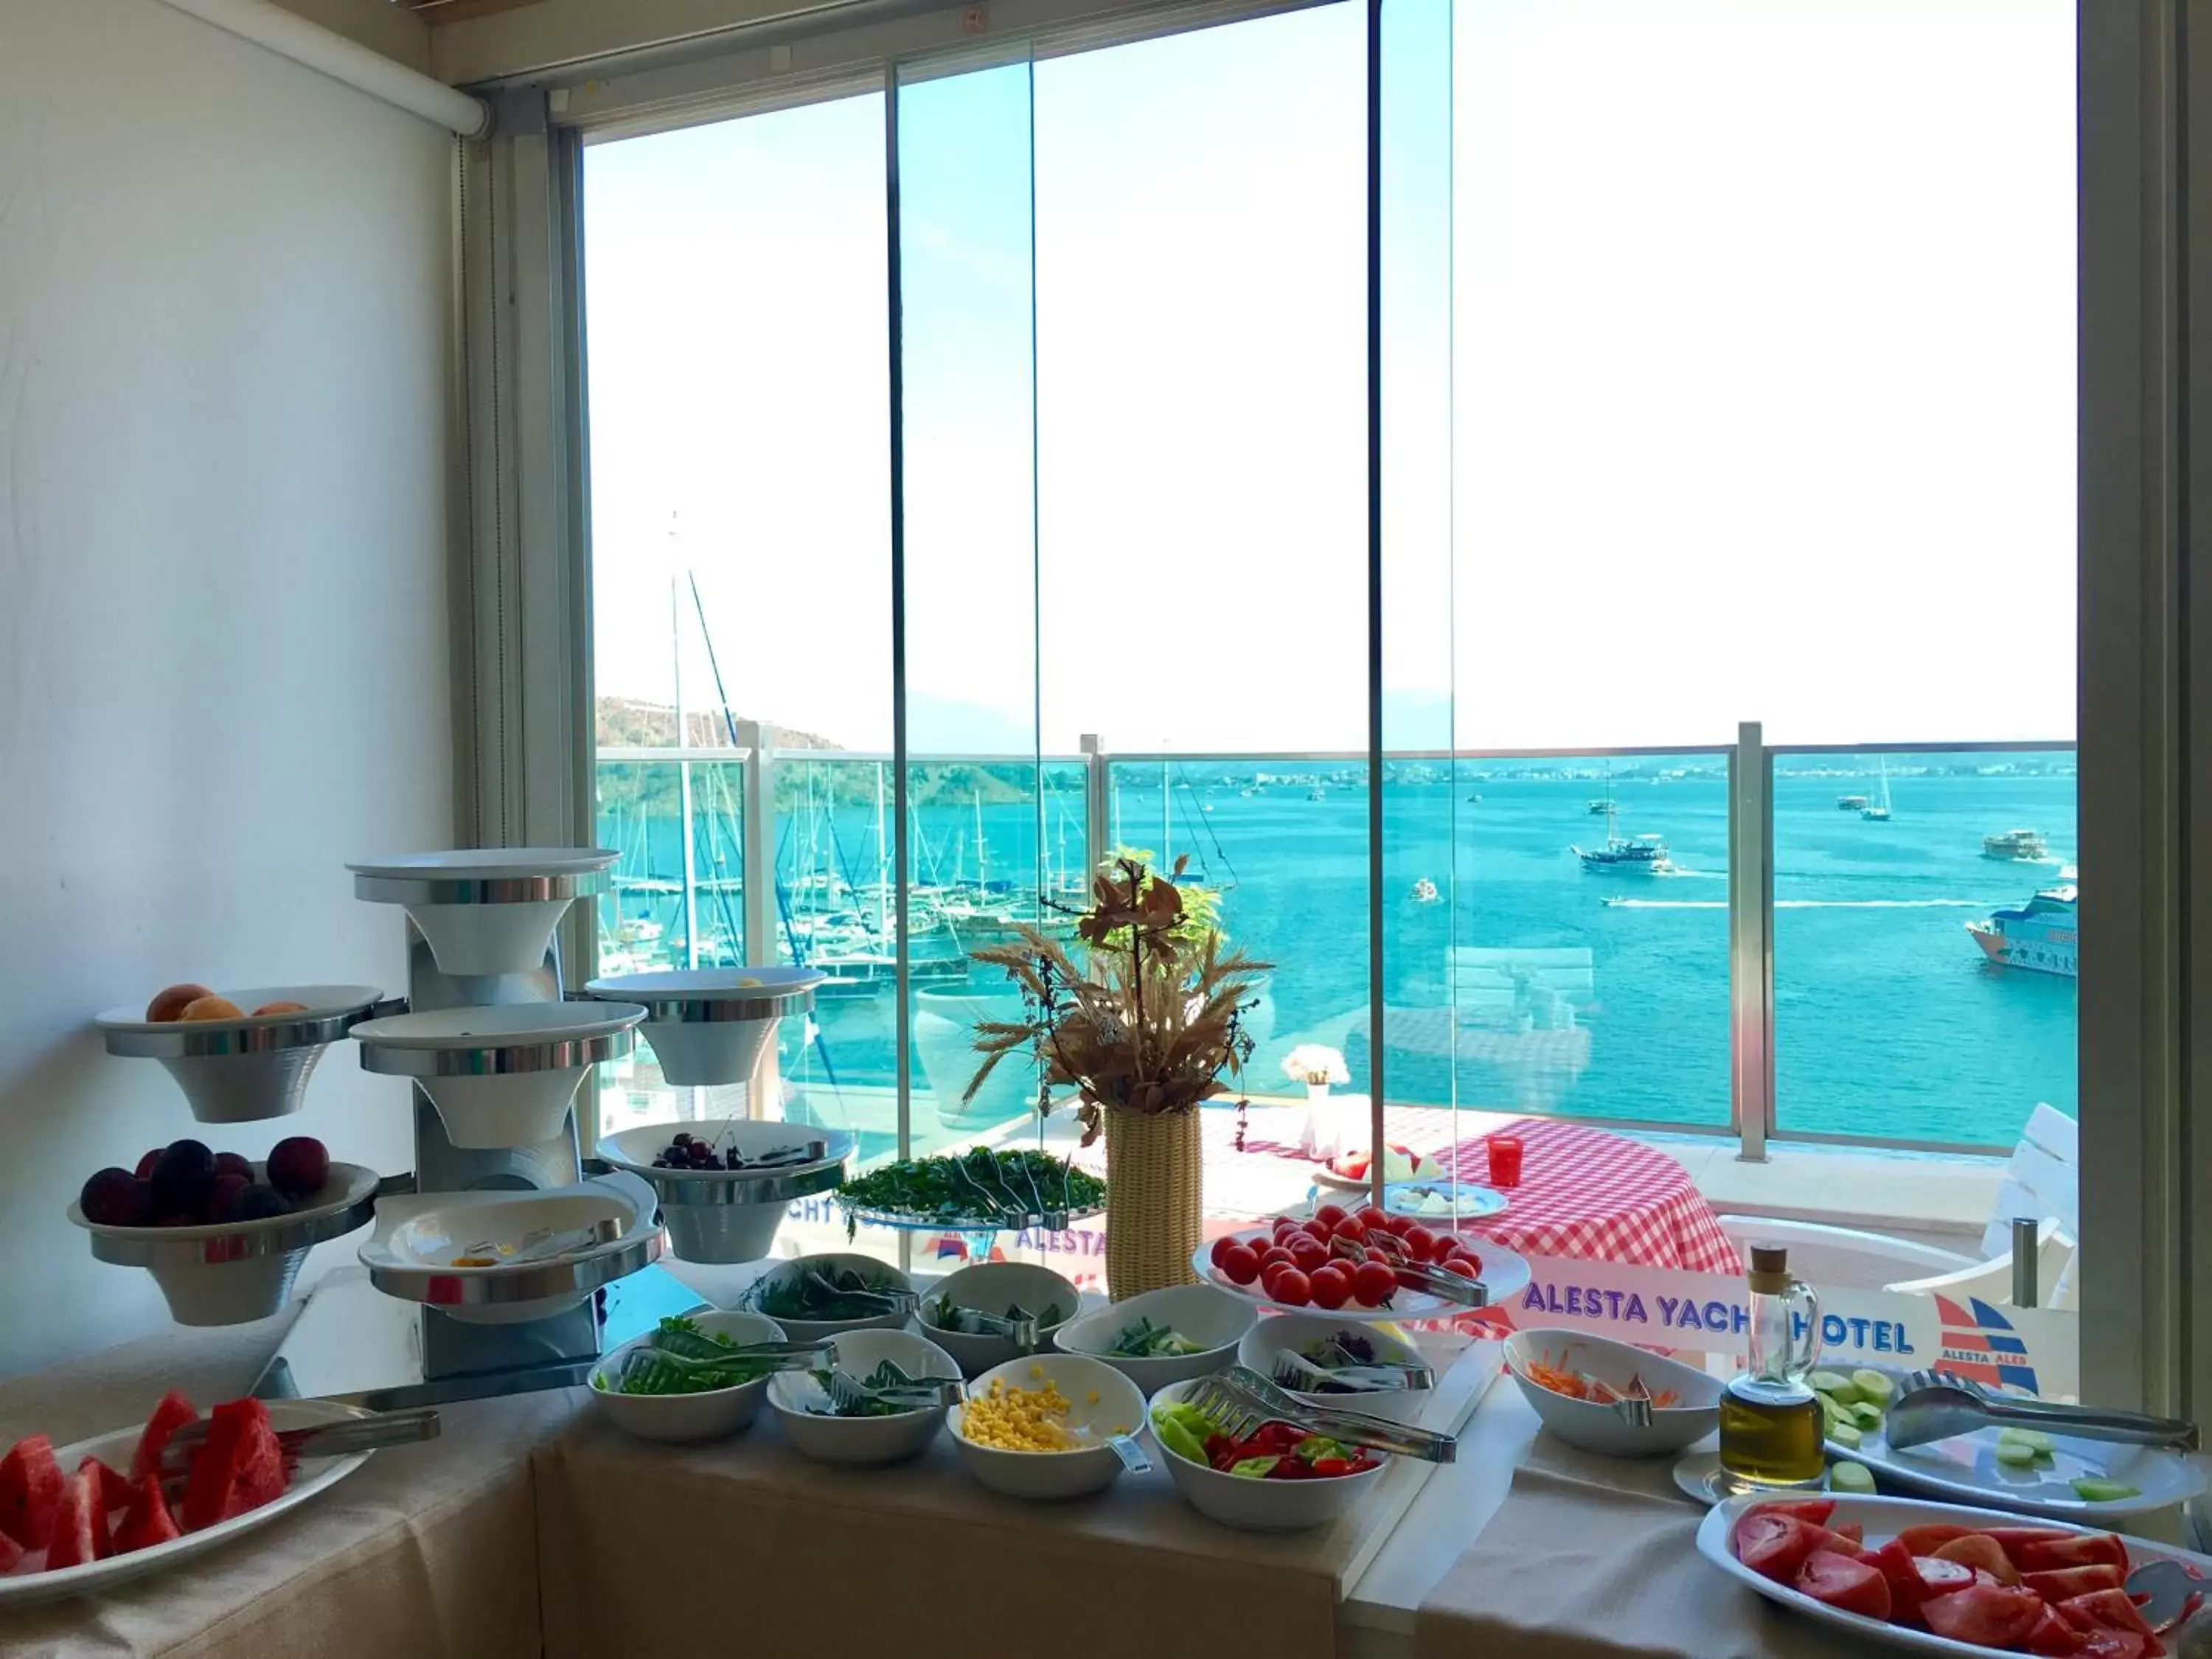 Breakfast in Alesta Yacht Hotel